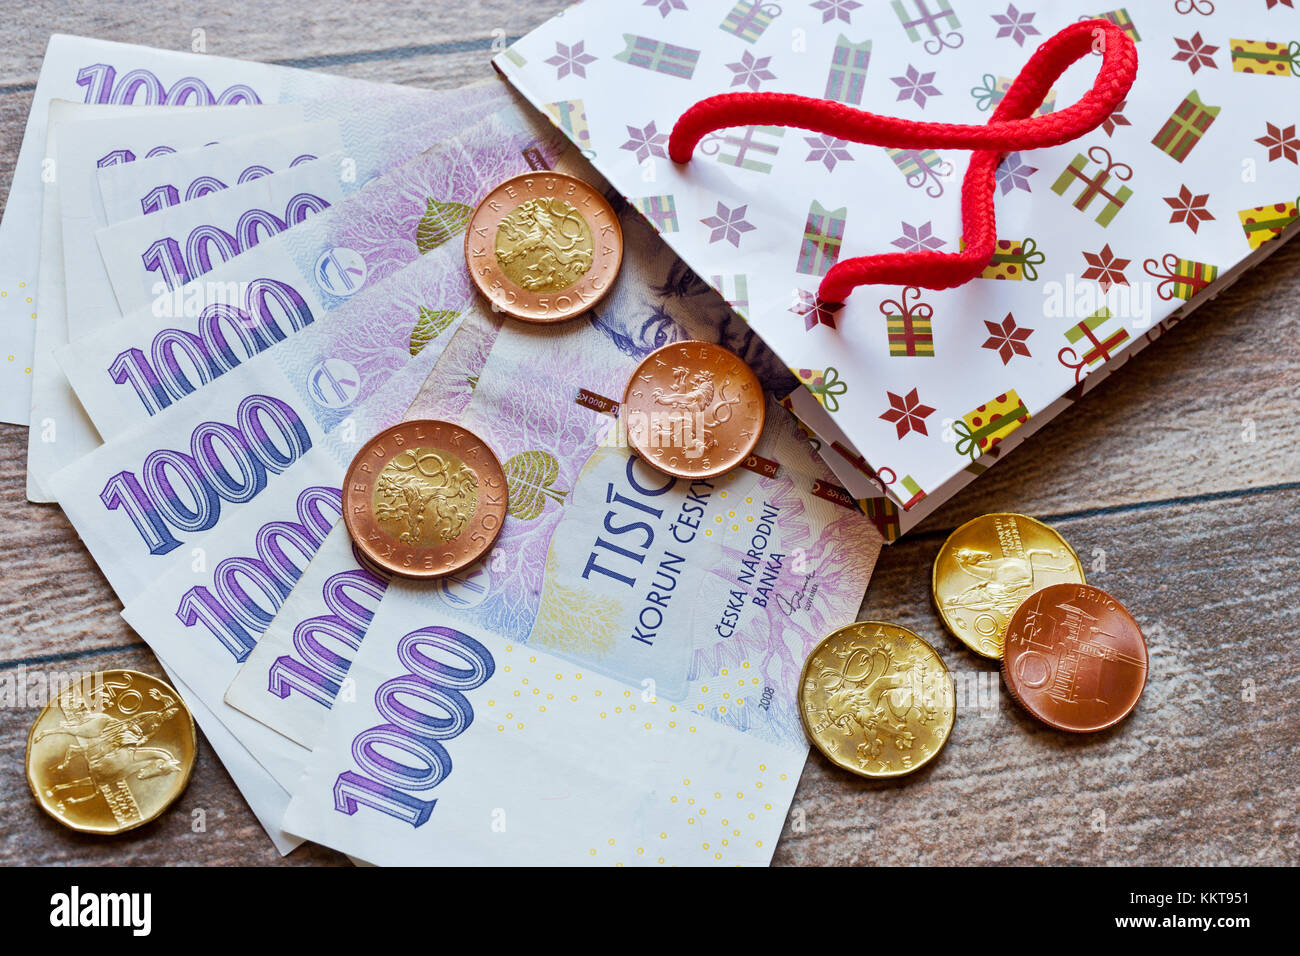 české peníze - bankovky jako dárek / Czech currency - banknotes in gift bags Stock Photo